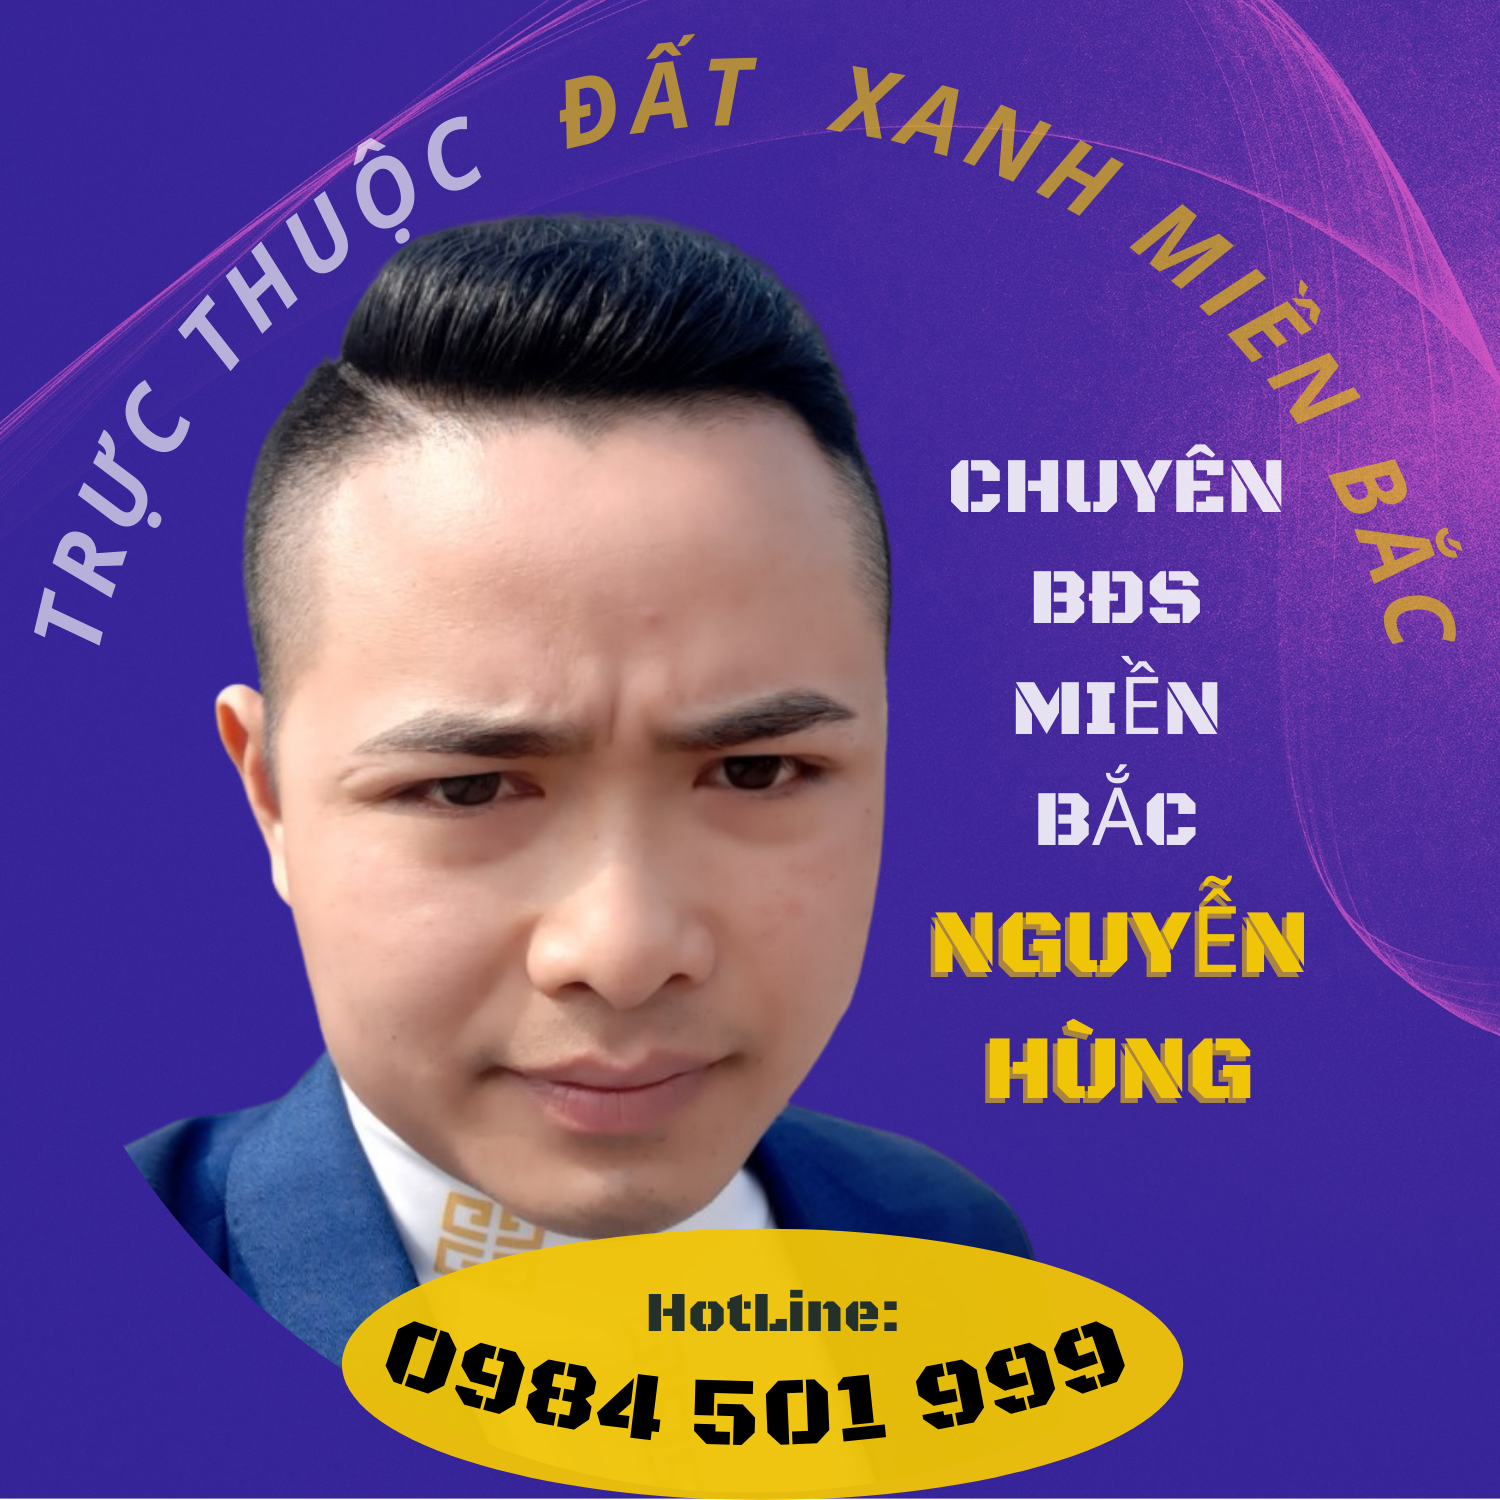 Nguyễn Hùng